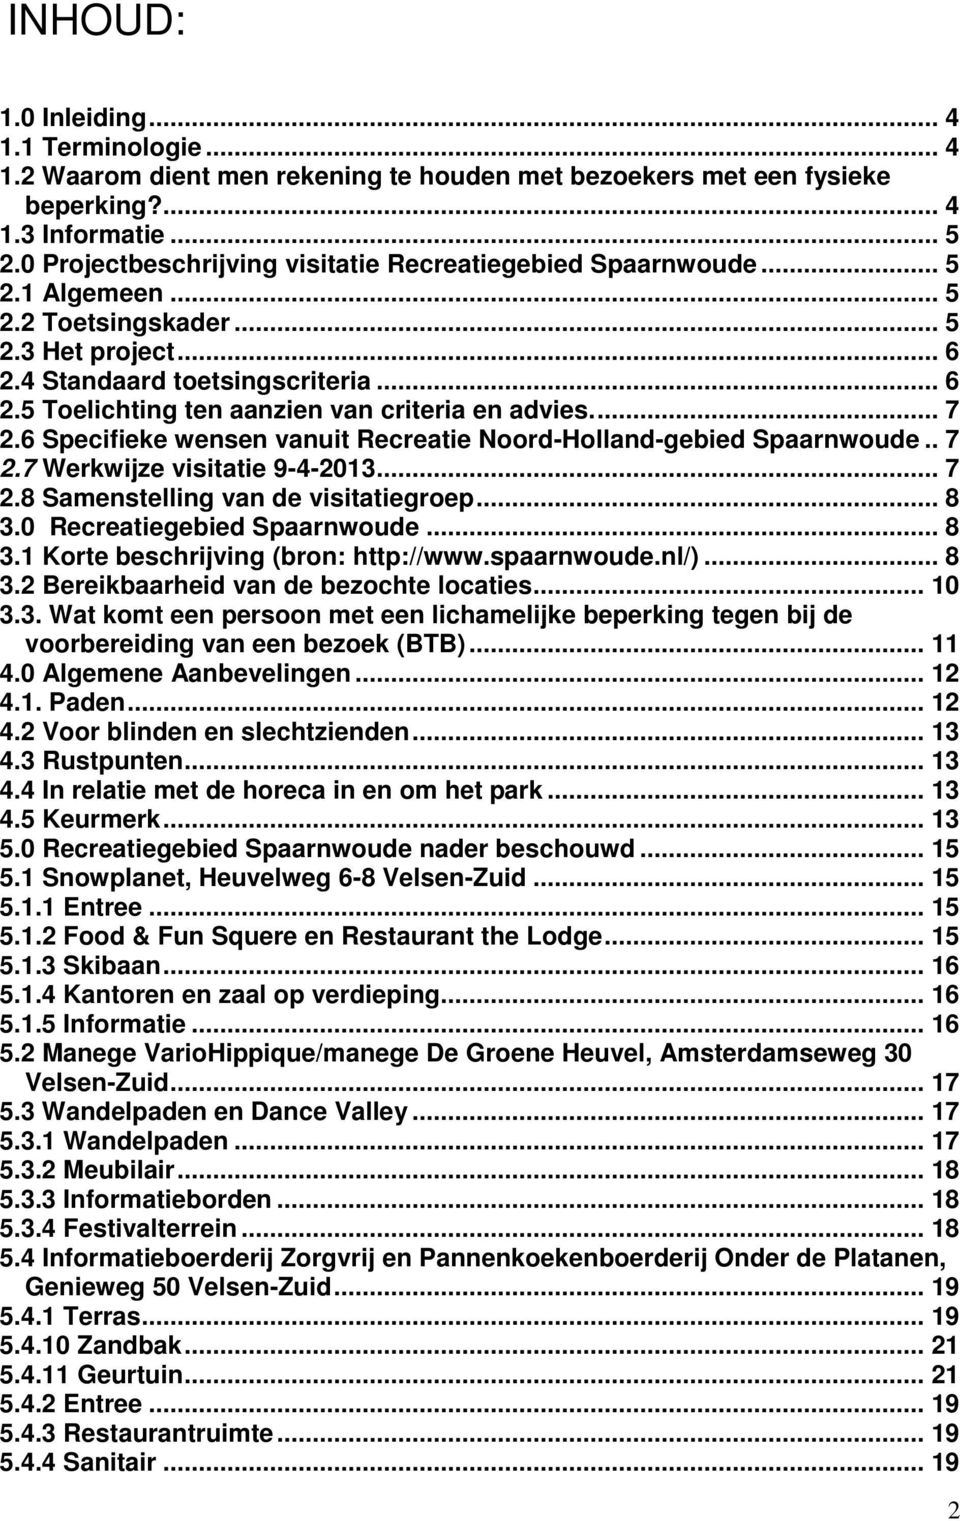 ... 7 2.6 Specifieke wensen vanuit Recreatie Noord-Holland-gebied Spaarnwoude.. 7 2.7 Werkwijze visitatie 9-4-2013... 7 2.8 Samenstelling van de visitatiegroep... 8 3.0 Recreatiegebied Spaarnwoude.